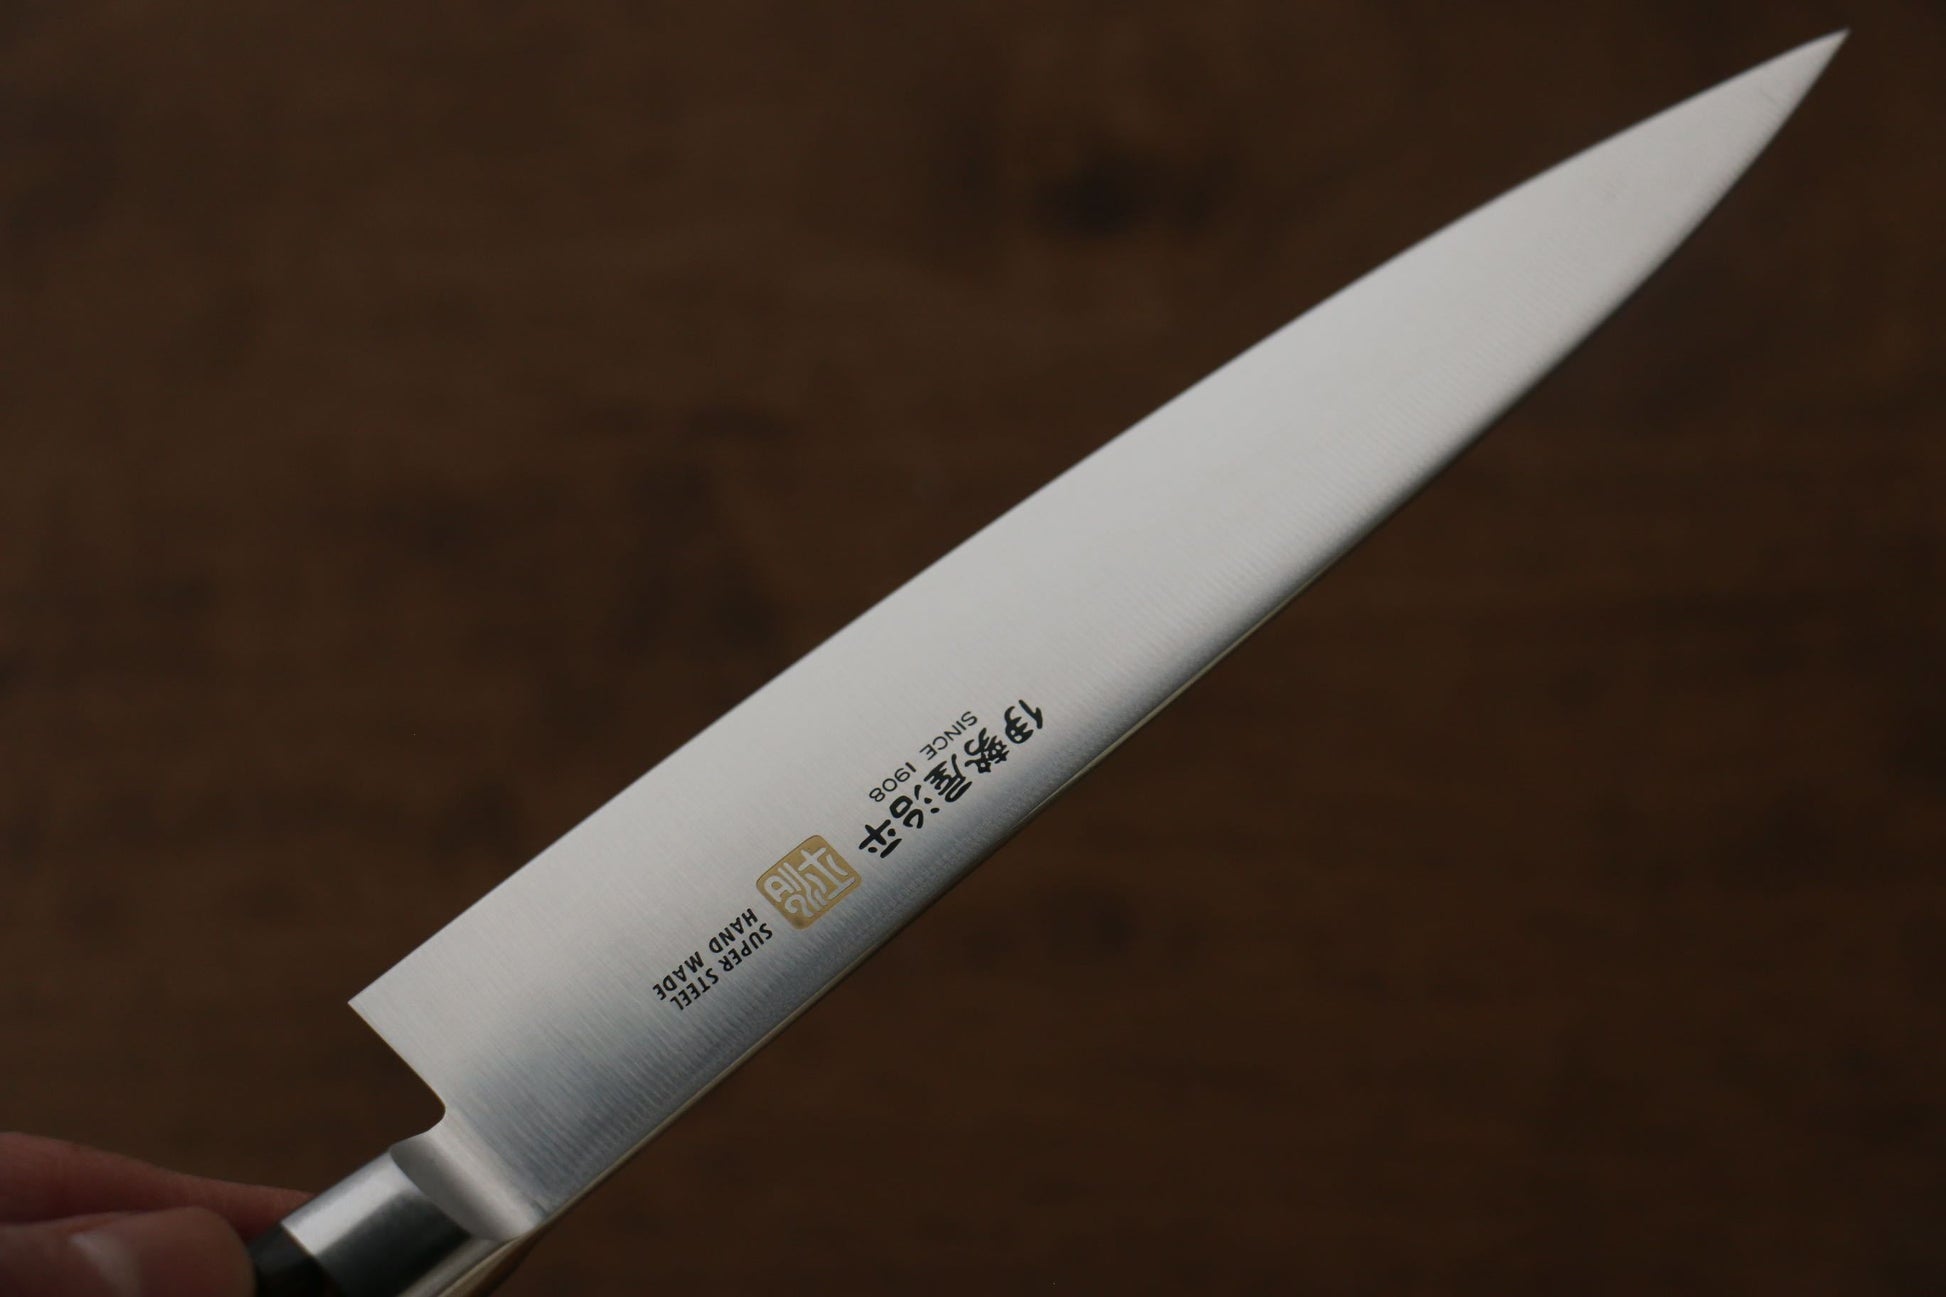 Iseya Molybdenum Petty-Utility Japanese Knife 150mm Mahogany Pakka wood Handle - Japanny - Best Japanese Knife